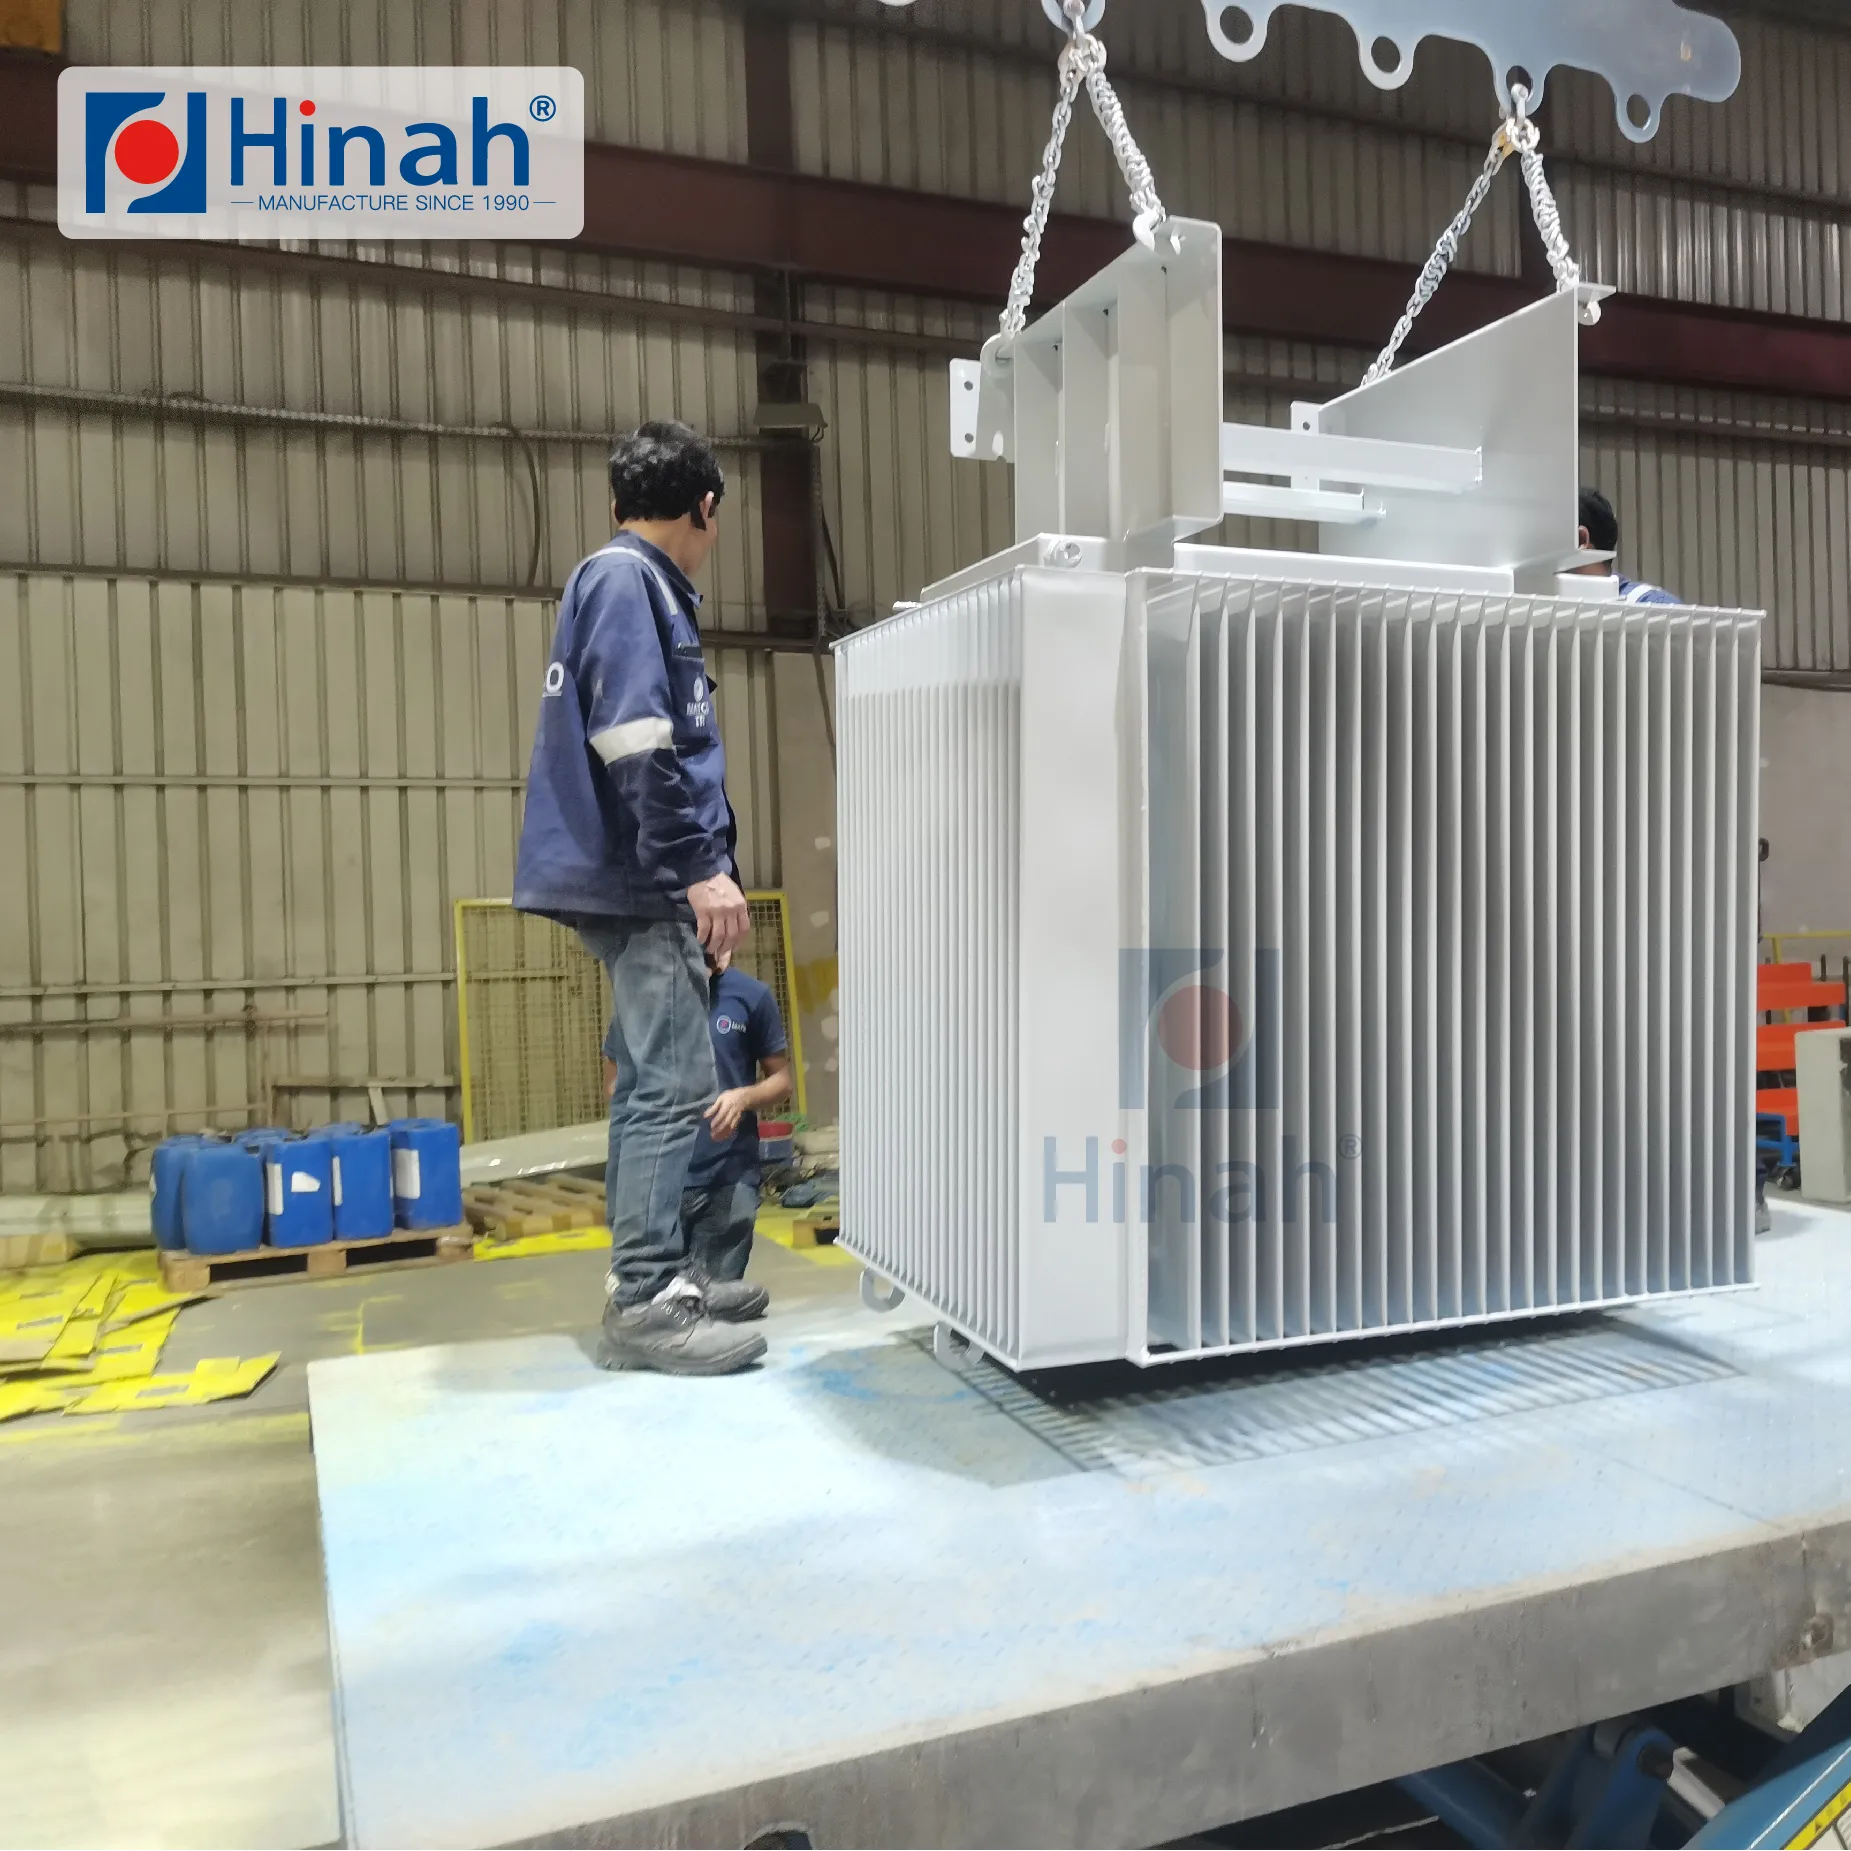 Endüstriyel transformers-1500kg için tam otomatik güç ve ücretsiz konveyör toz boya boyama hattı